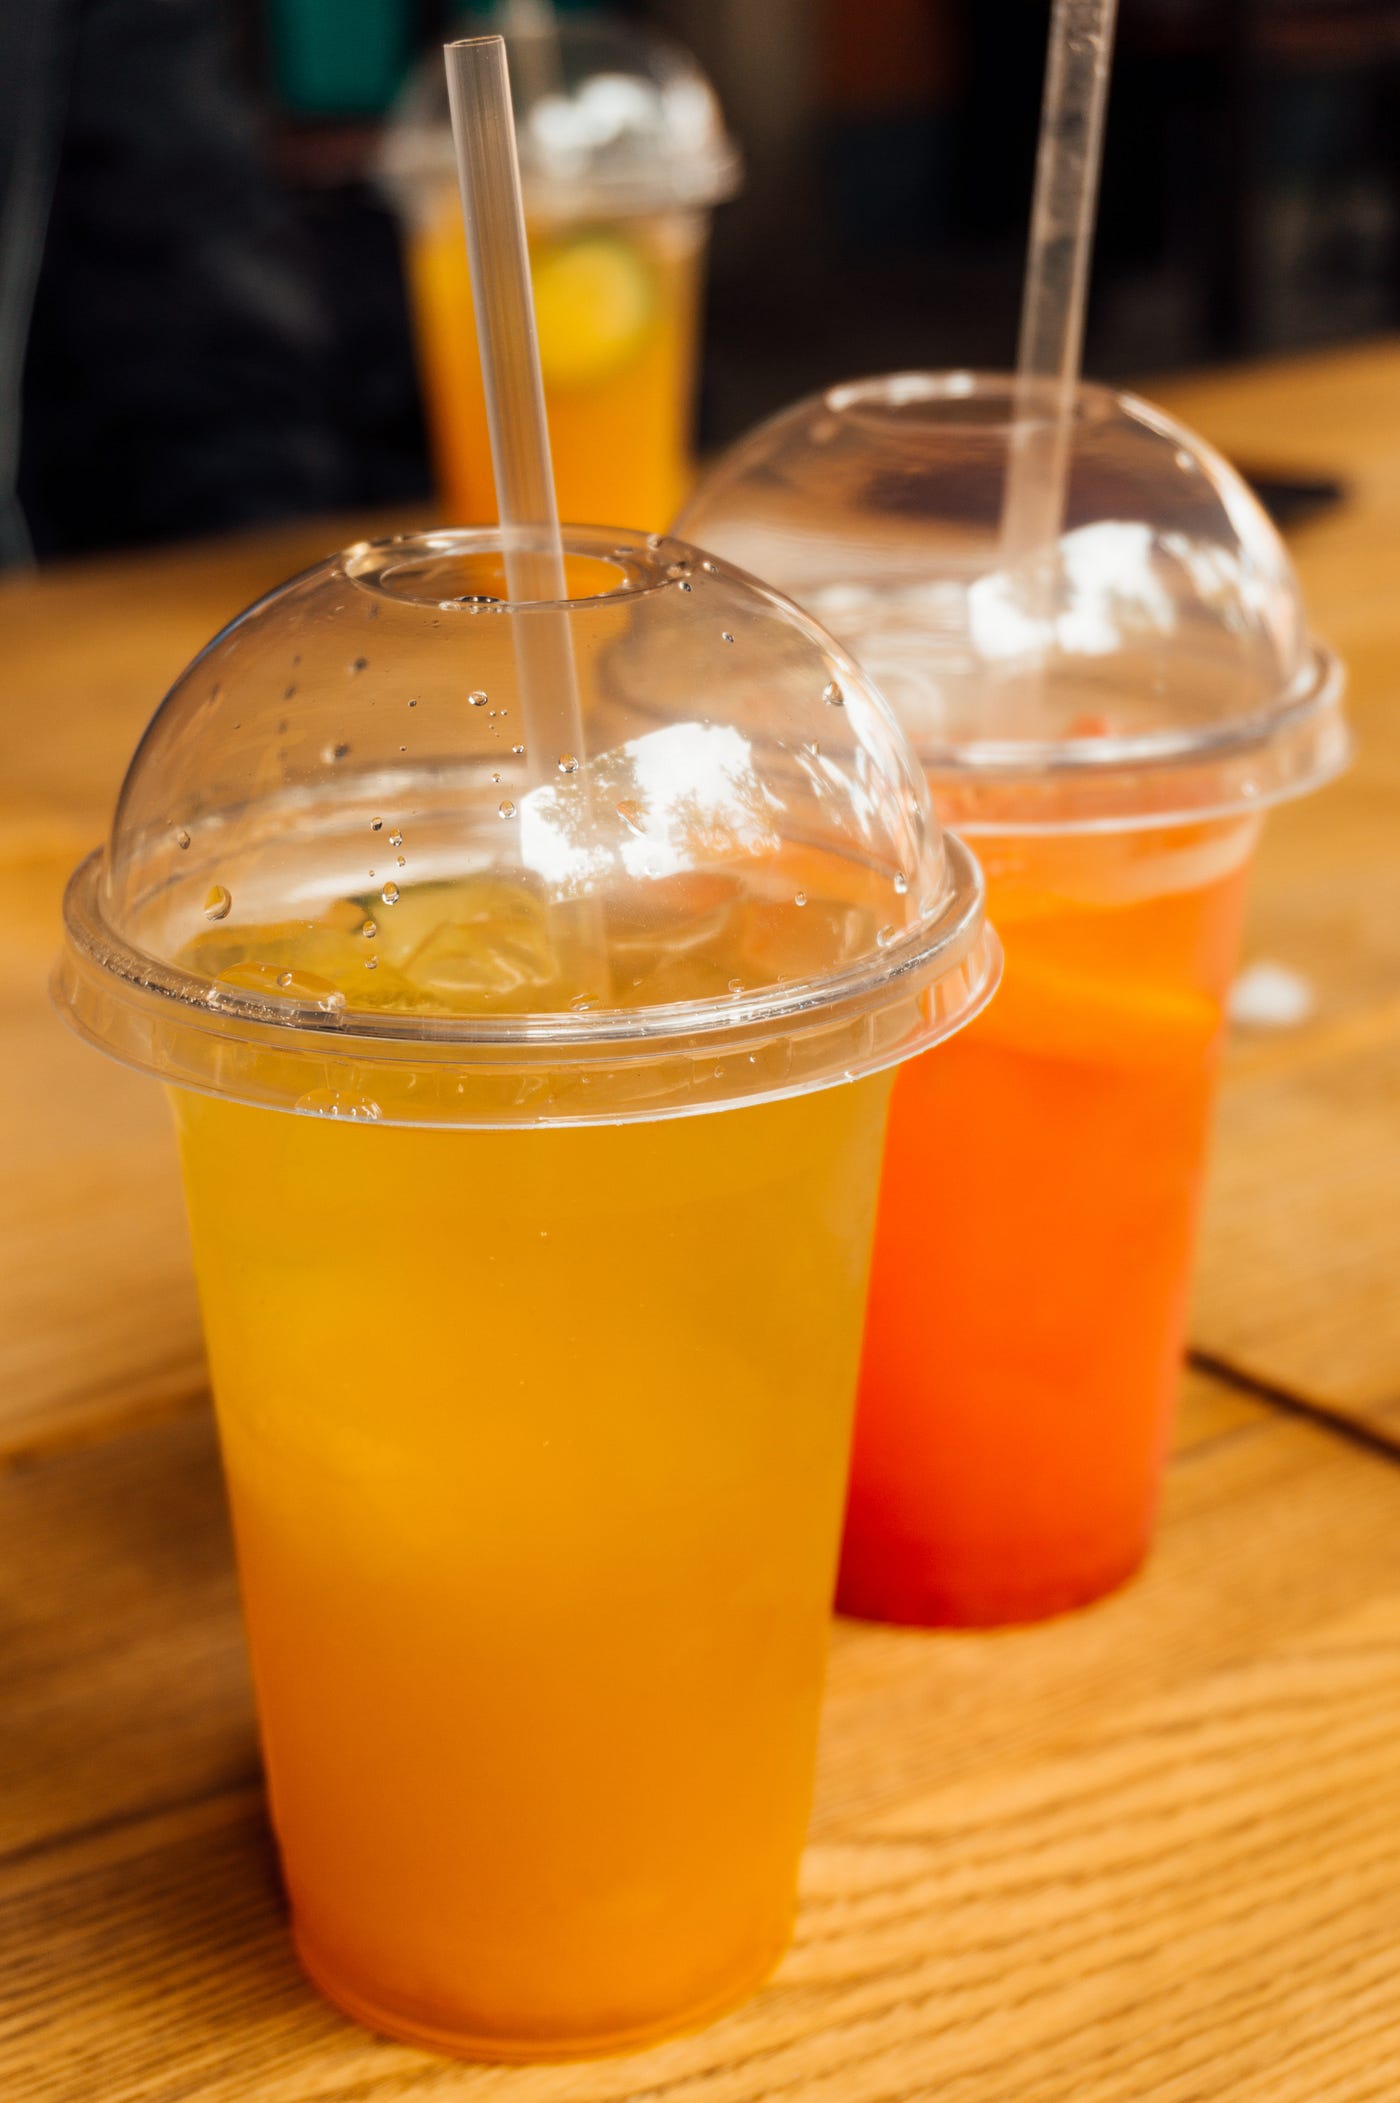 Why Does Freshly Squeezed Orange Juice Taste So Good?